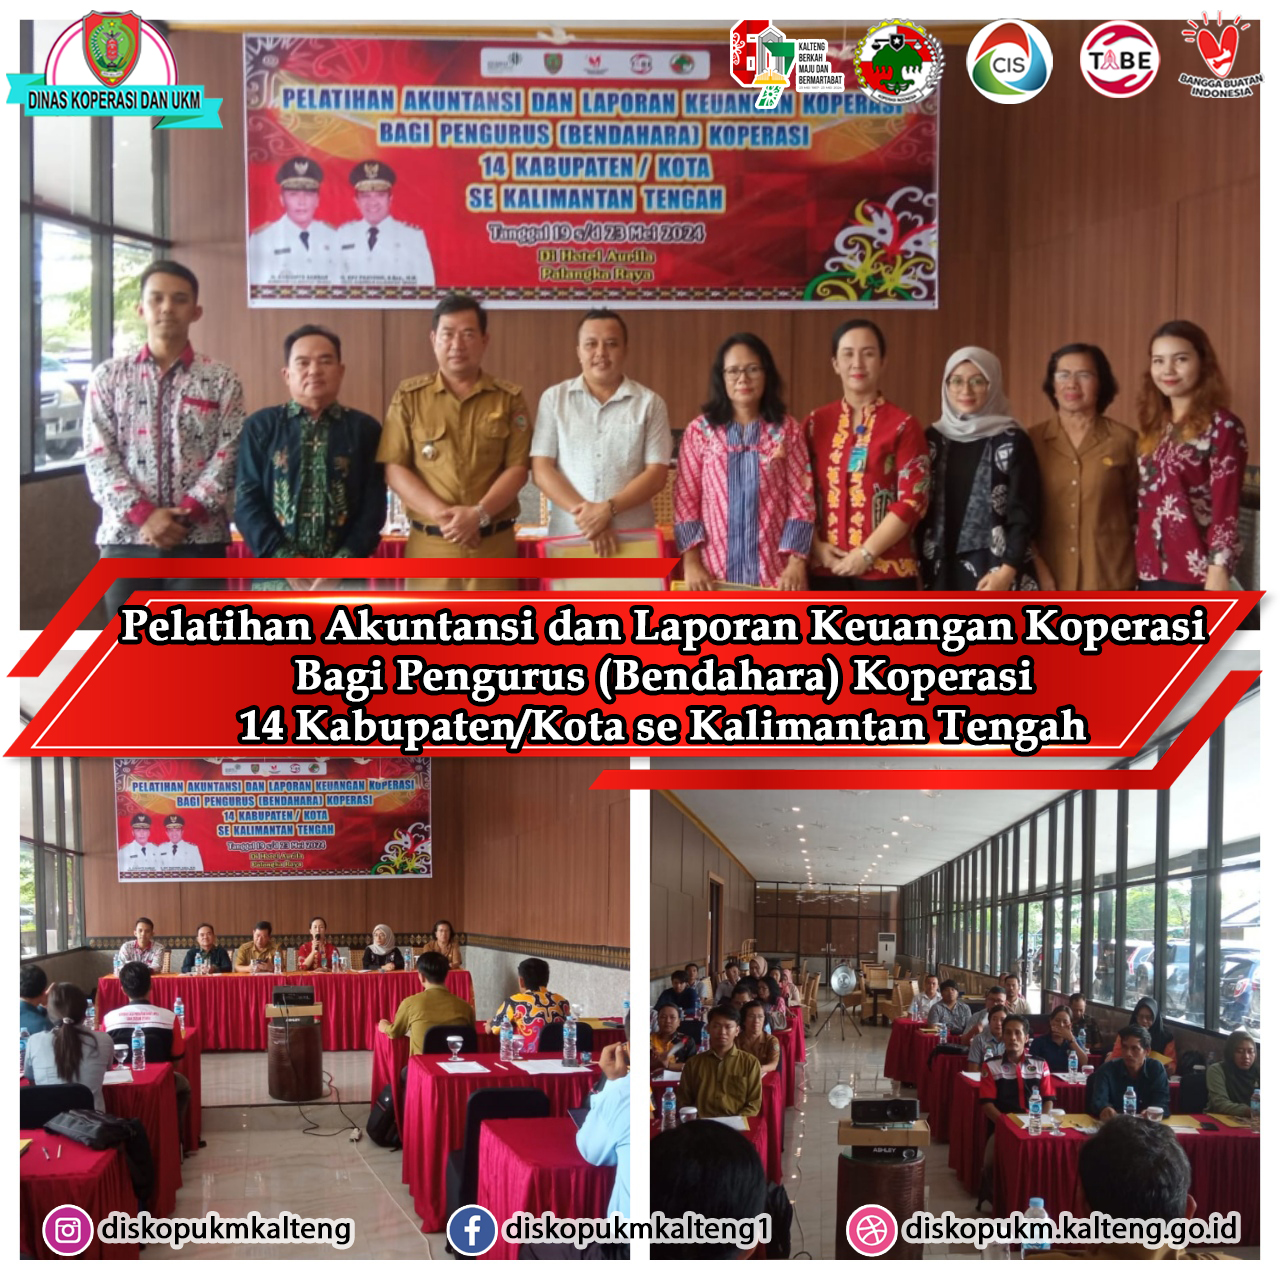 Pelatihan Akuntansi dan Laporan Keuangan Koperasi Bagi Pengurus (Bendahara) Koperasi 14 Kabupaten/Kota se Kalimantan Tengah